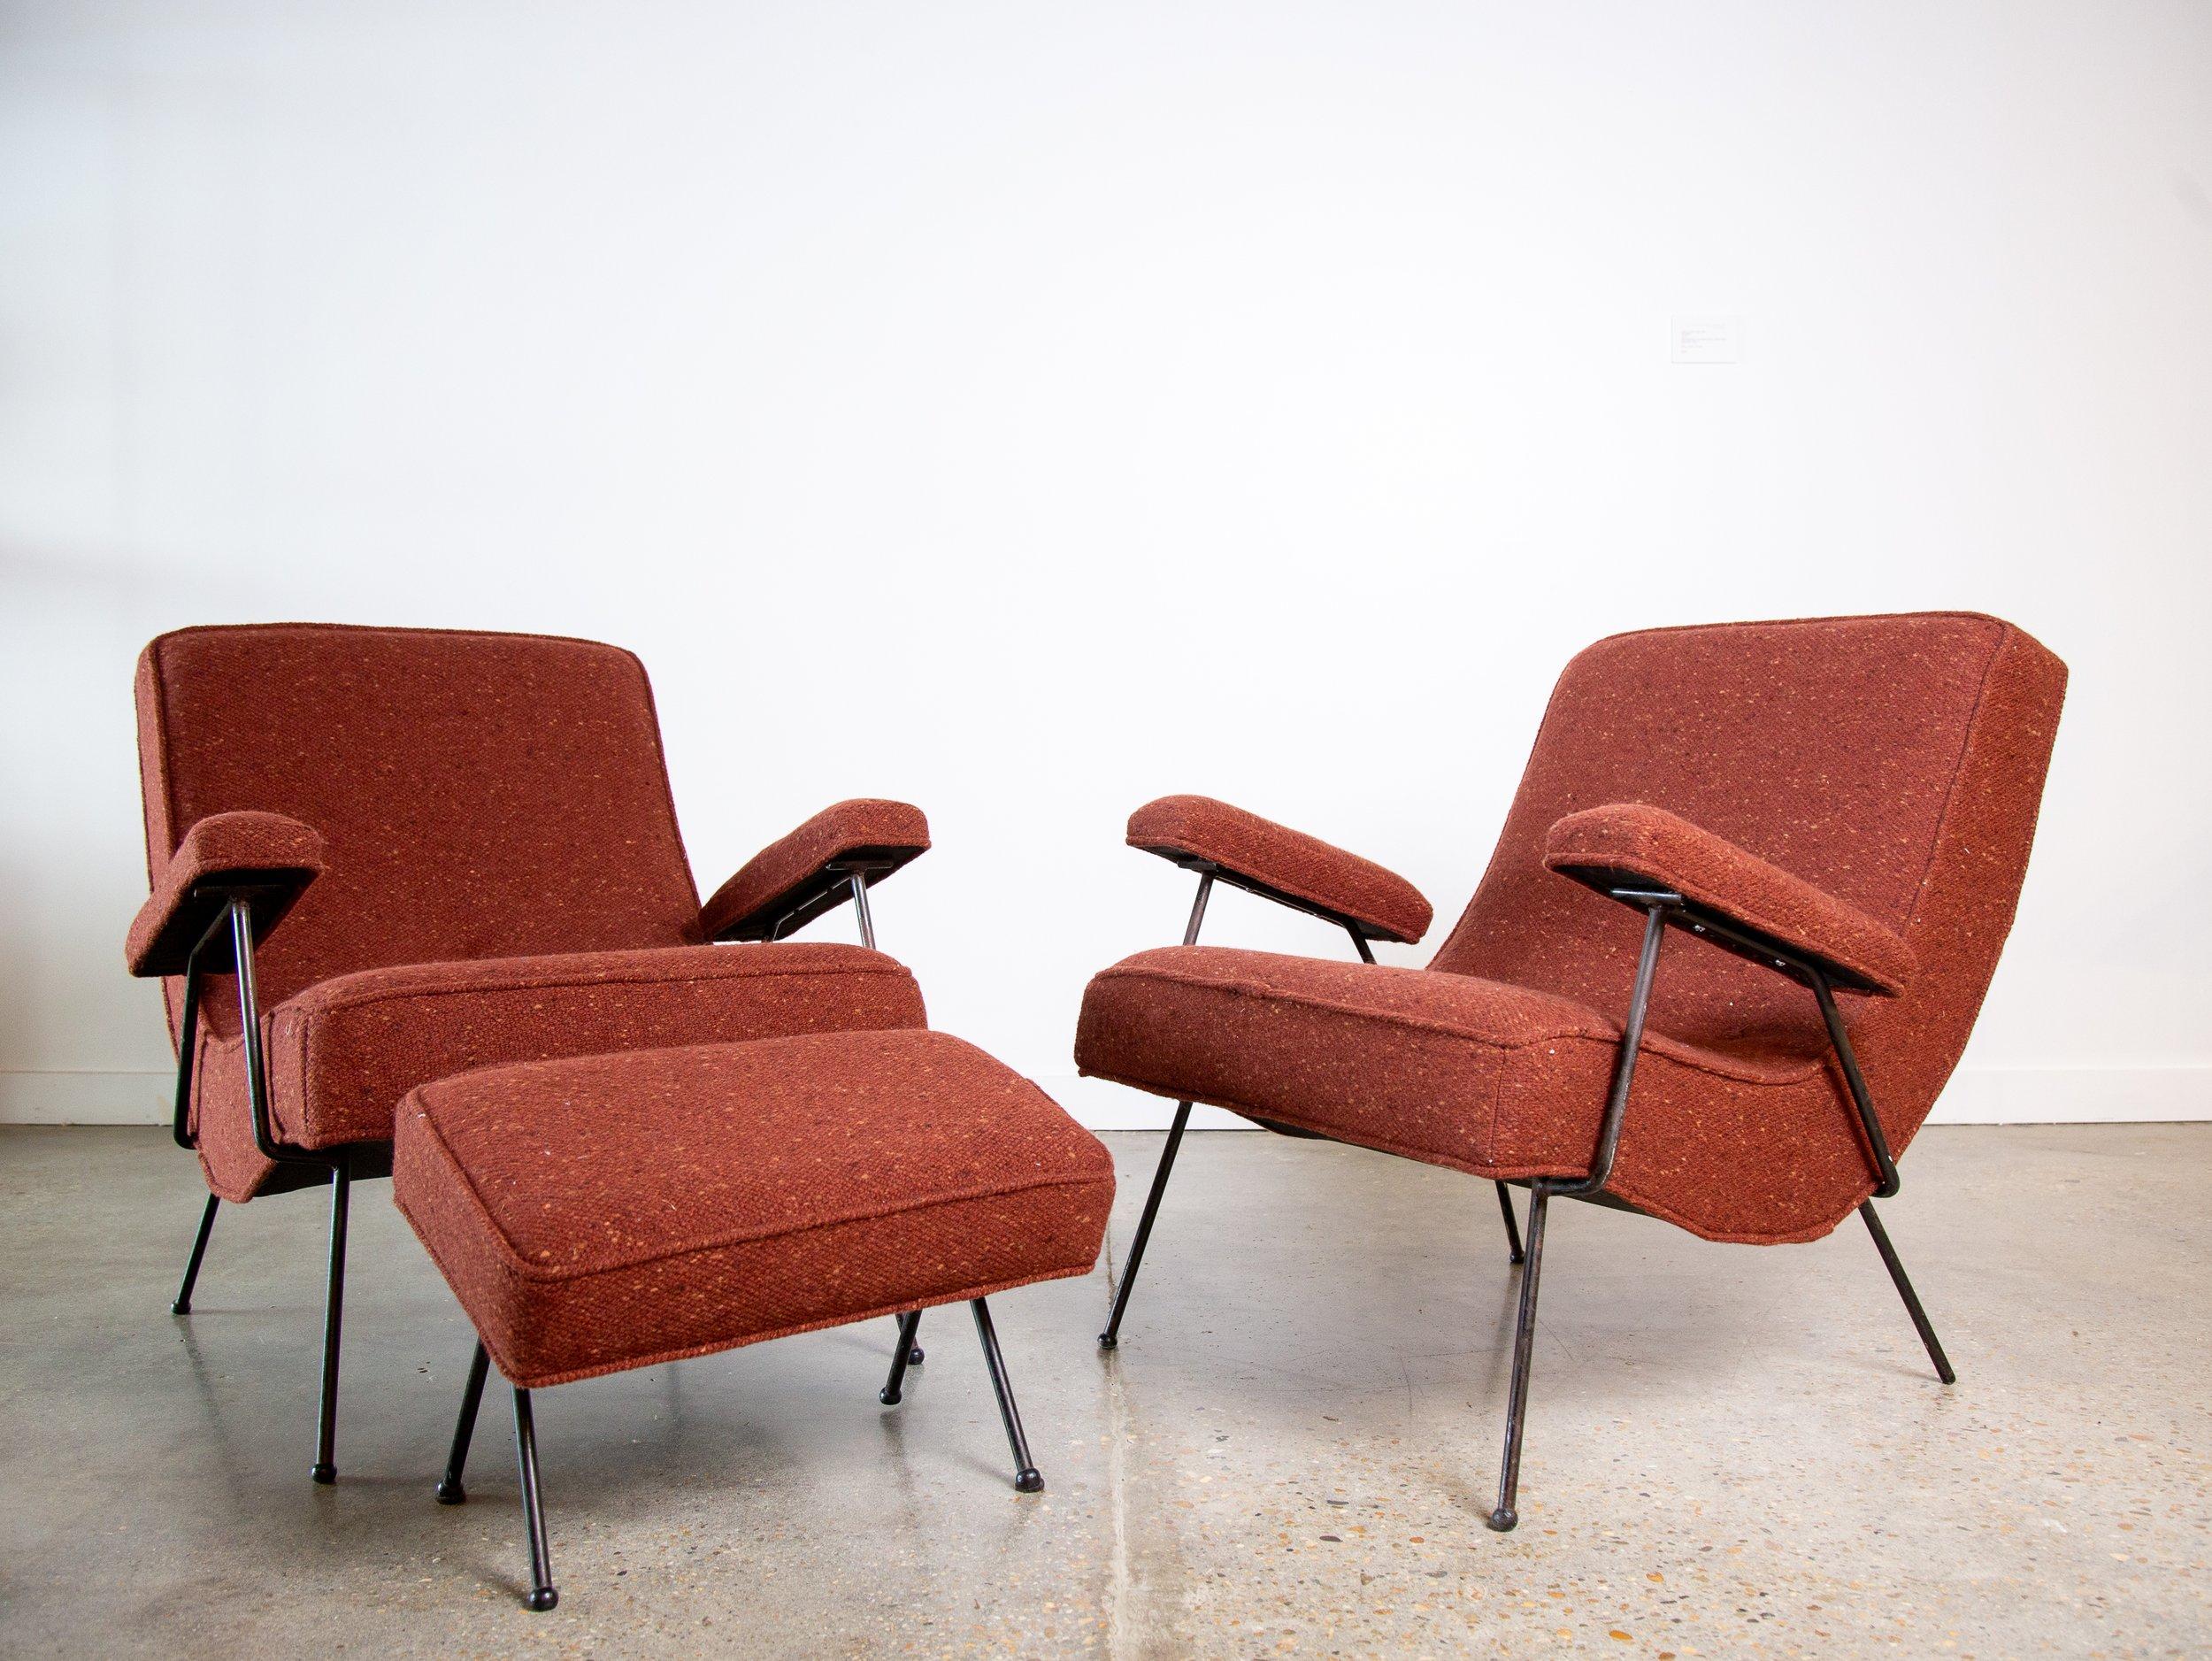 Ein frühes Paar von Adrian Pearsall 109c Lounge Chairs für Handwerker.  Diese frühen Eisenstühle tauchen nur selten auf. Diese Stühle stammen aus einem Einfamilienhaus (mit Foto von 1960). Die Wollpolsterung und der Schaumstoff sind neu ersetzt